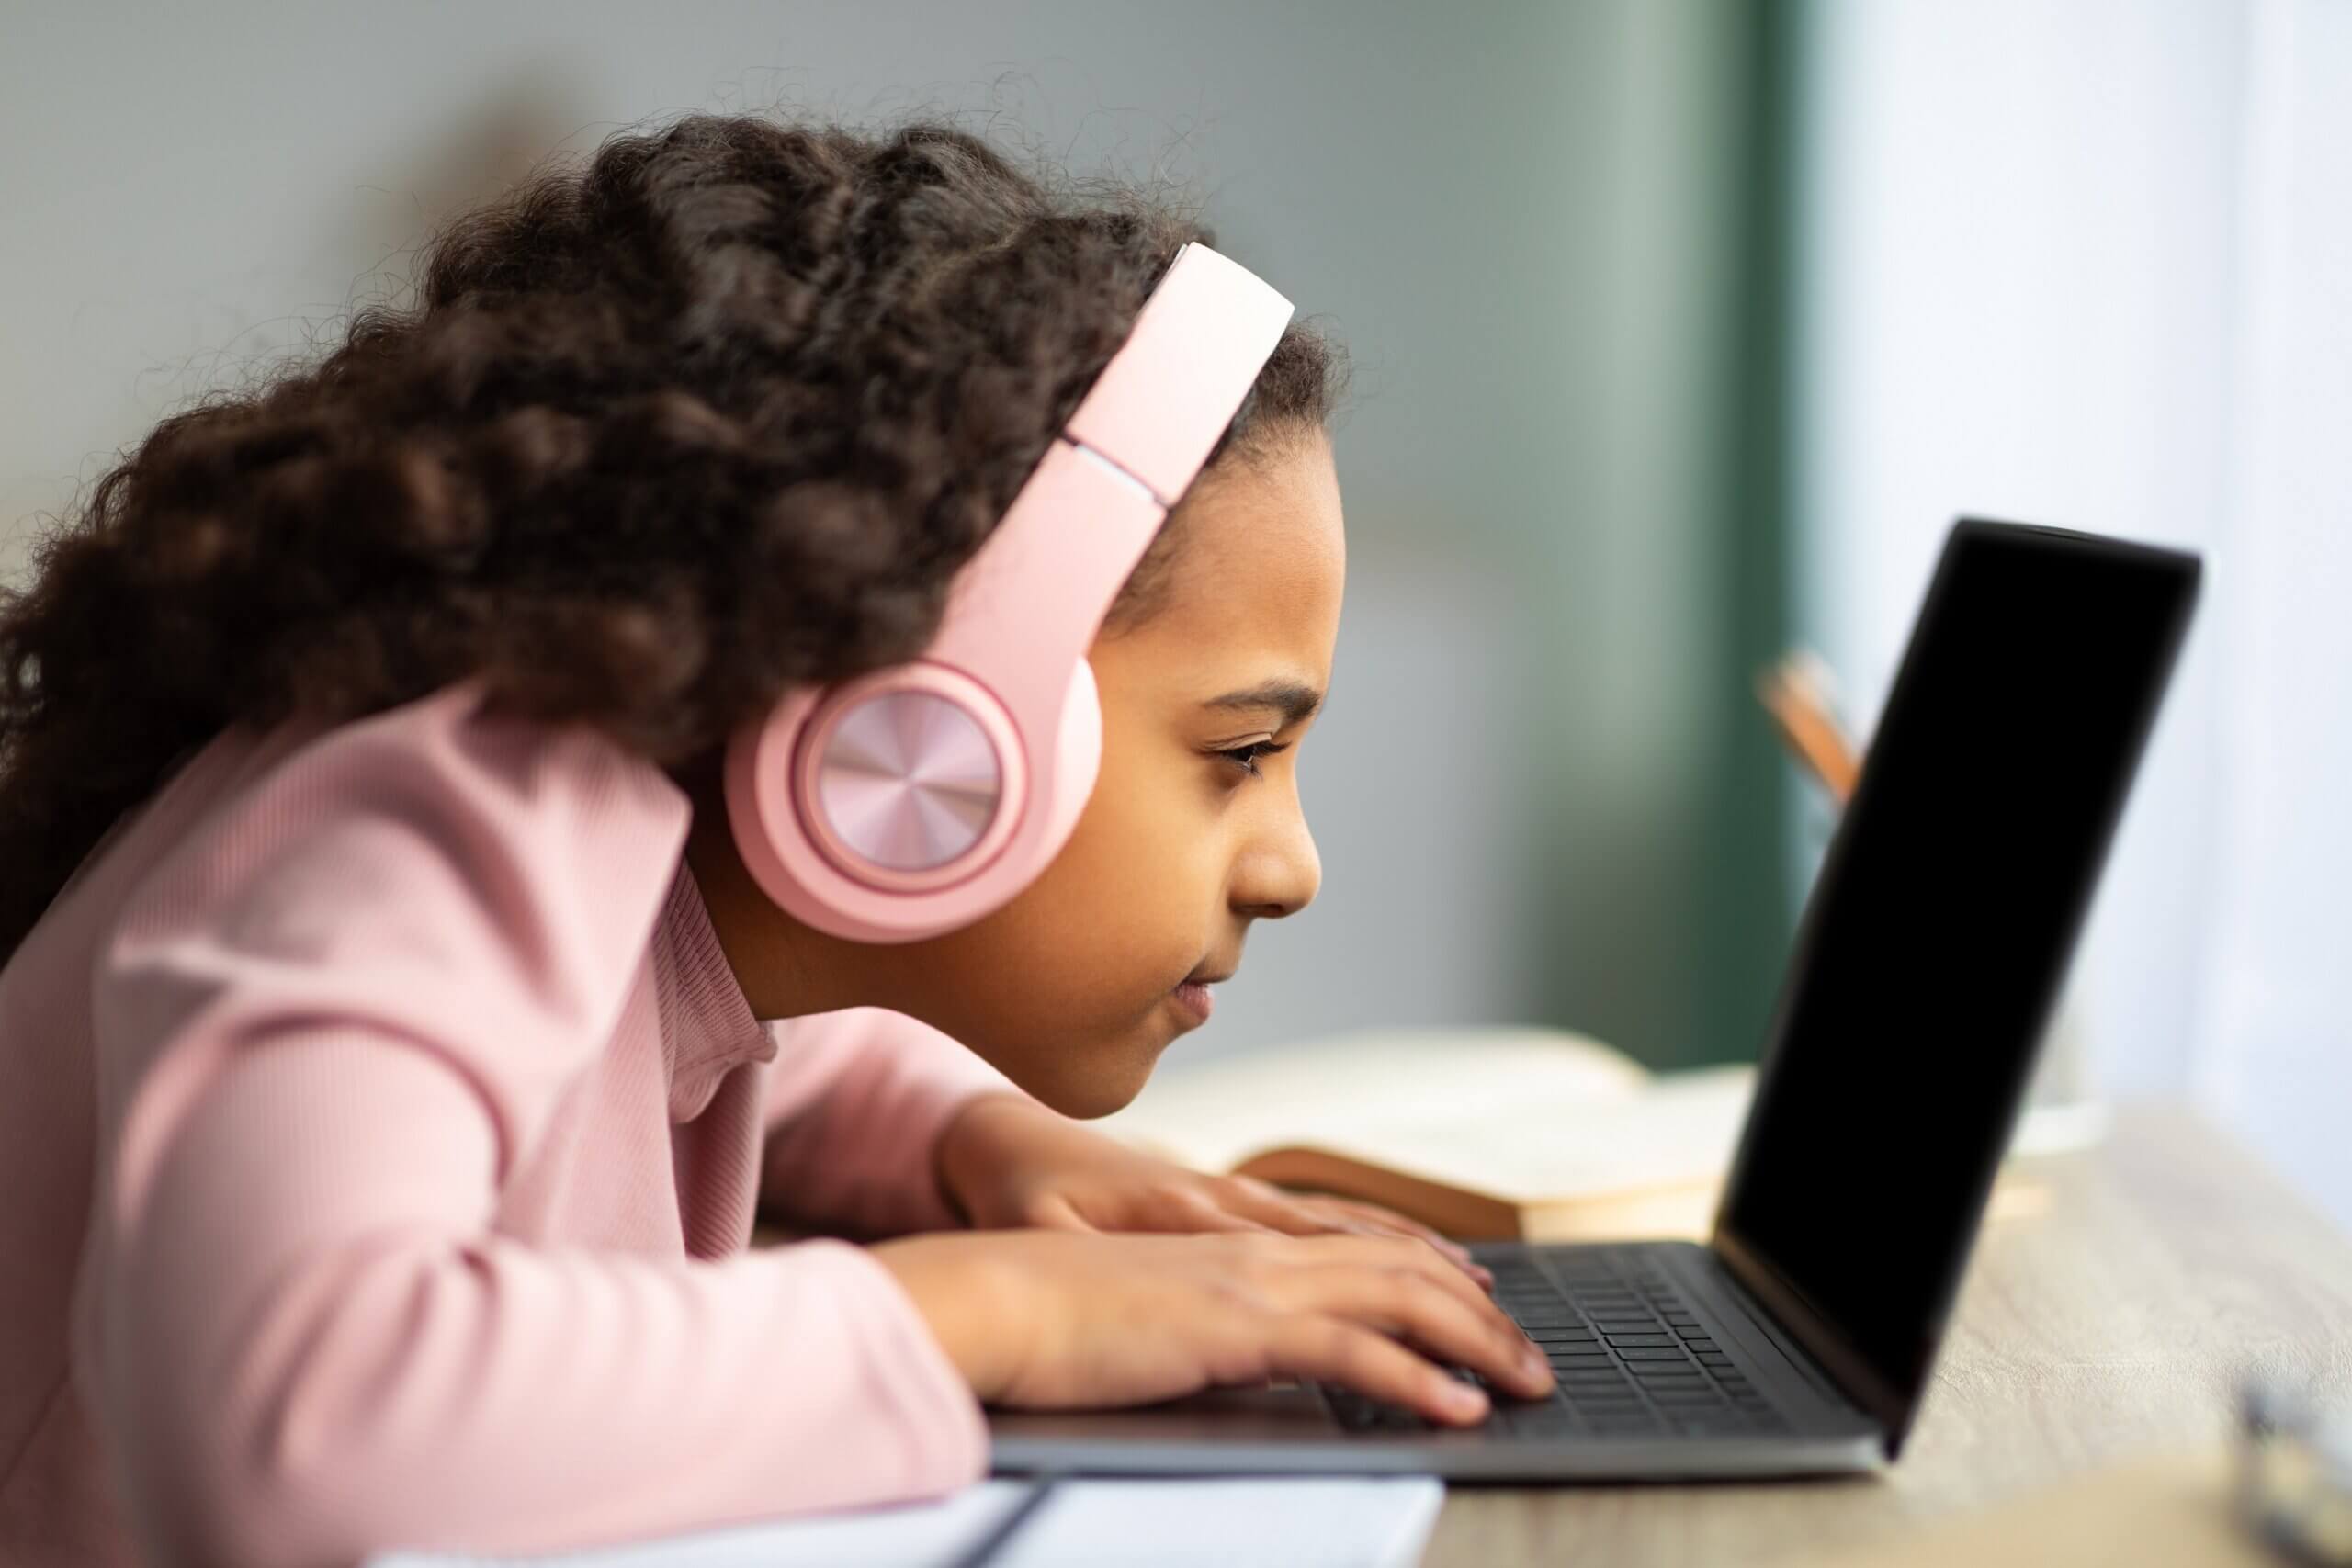 En ung jente som bruker en bærbar datamaskin med ansiktet veldig nært skjermen.